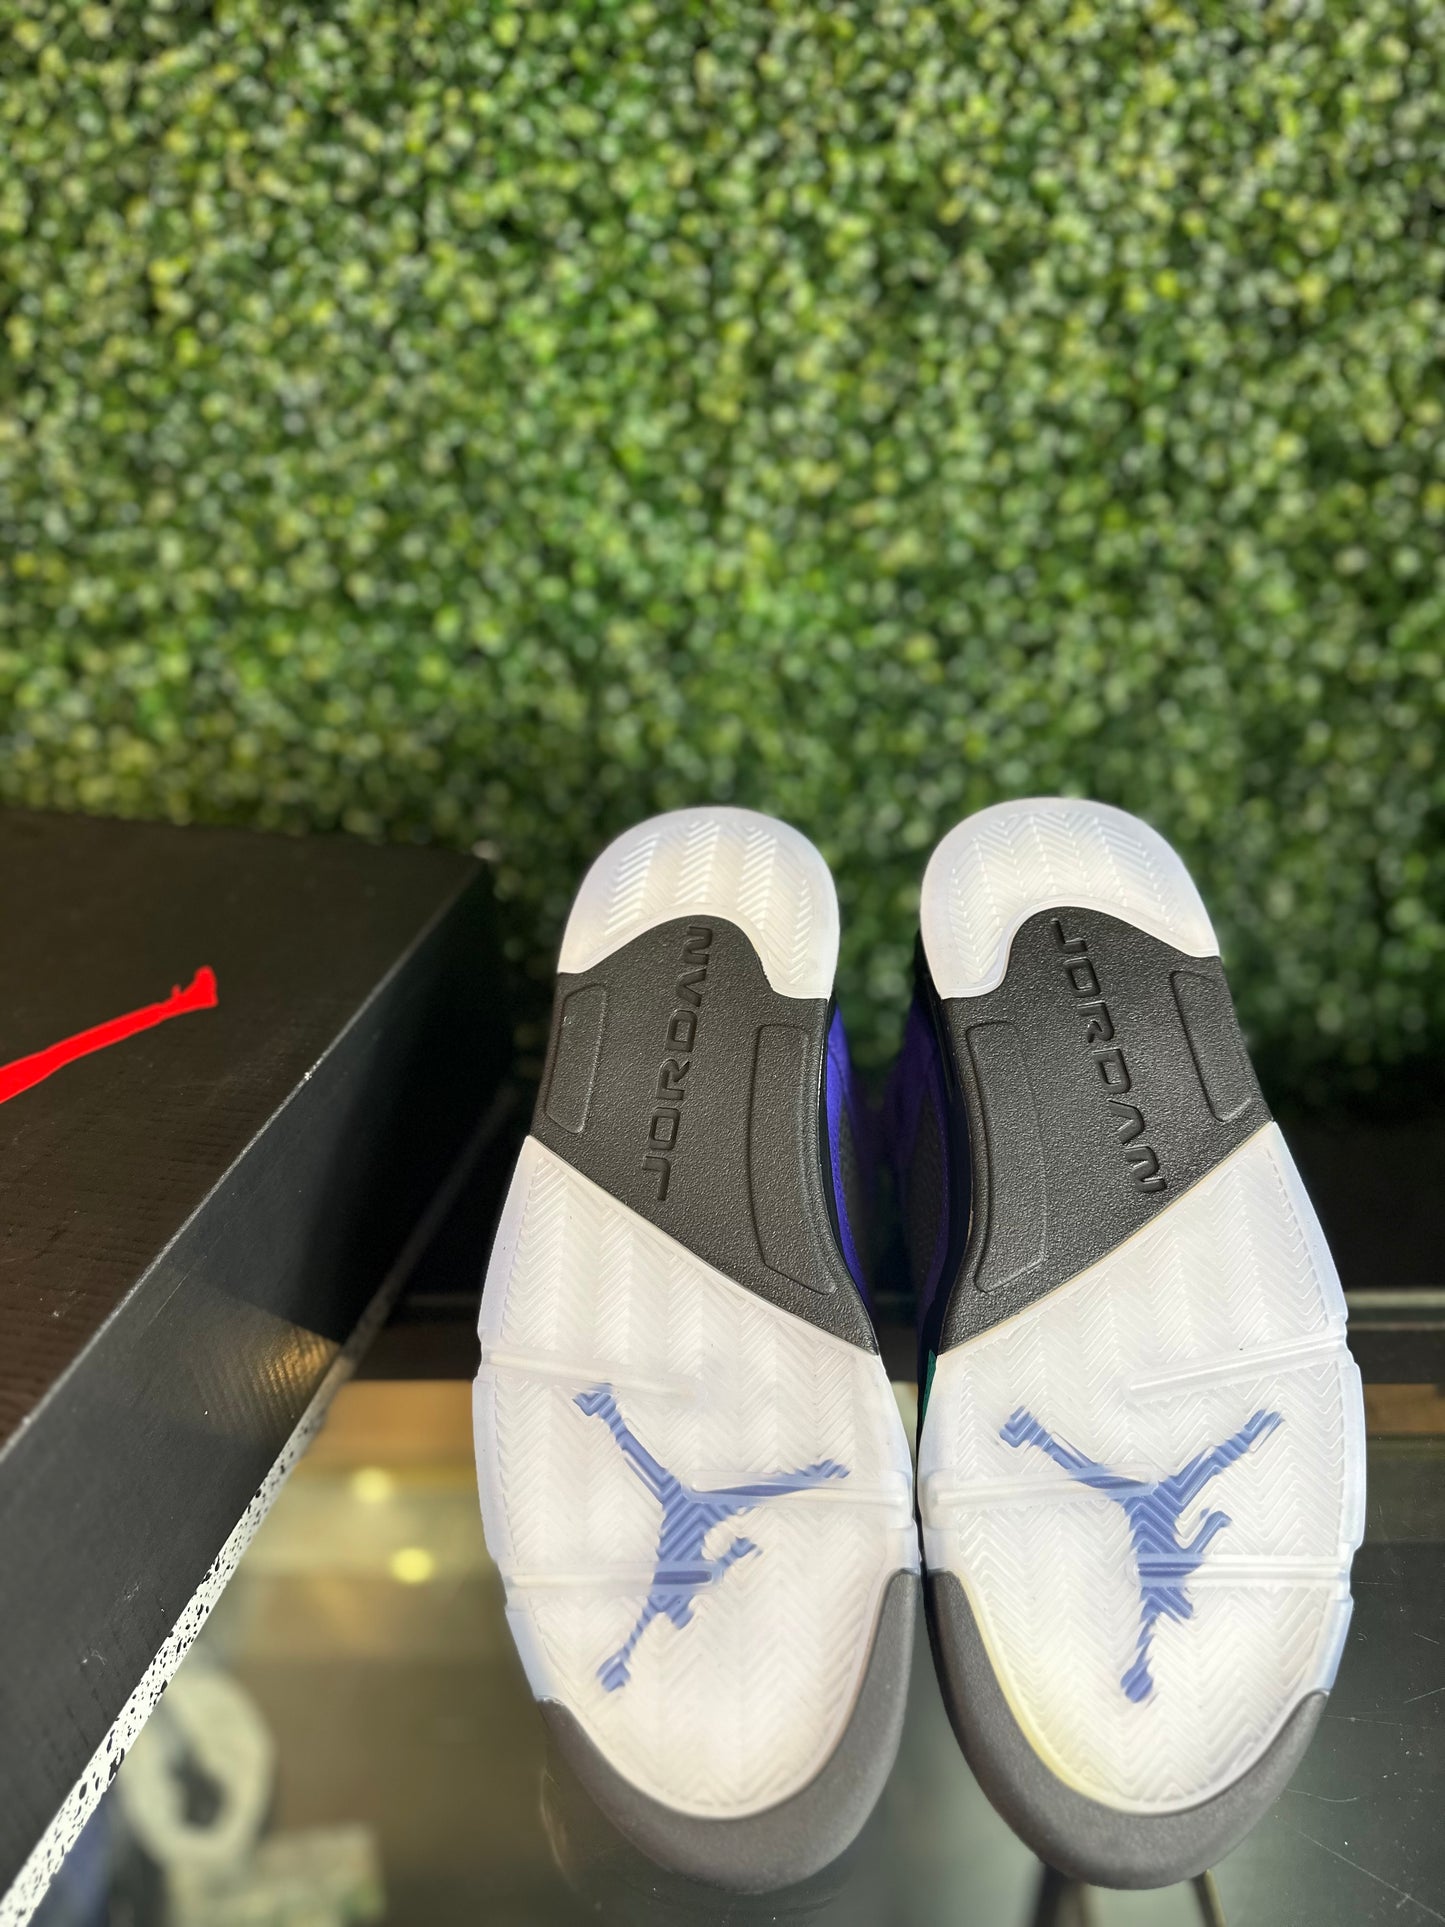 Air Jordan 5 “Alternate Grape” Size 11 VNDS OG